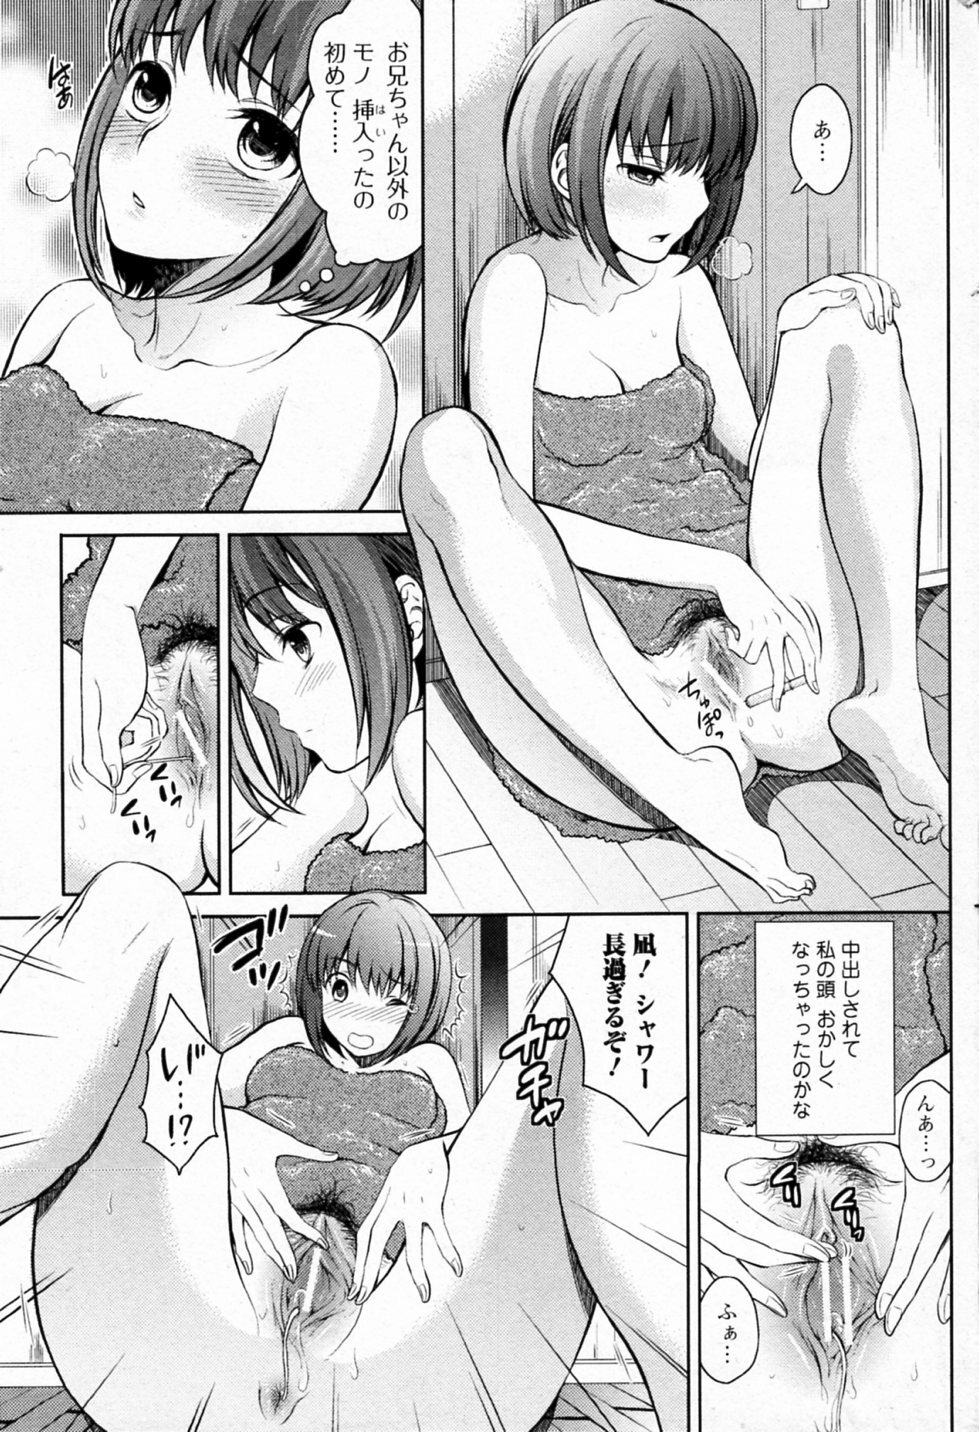 [Tamai Shikine] Kairaku Izon (Bishoujo Kakumei KIWAME 2011-12 Vol.17) page 5 full